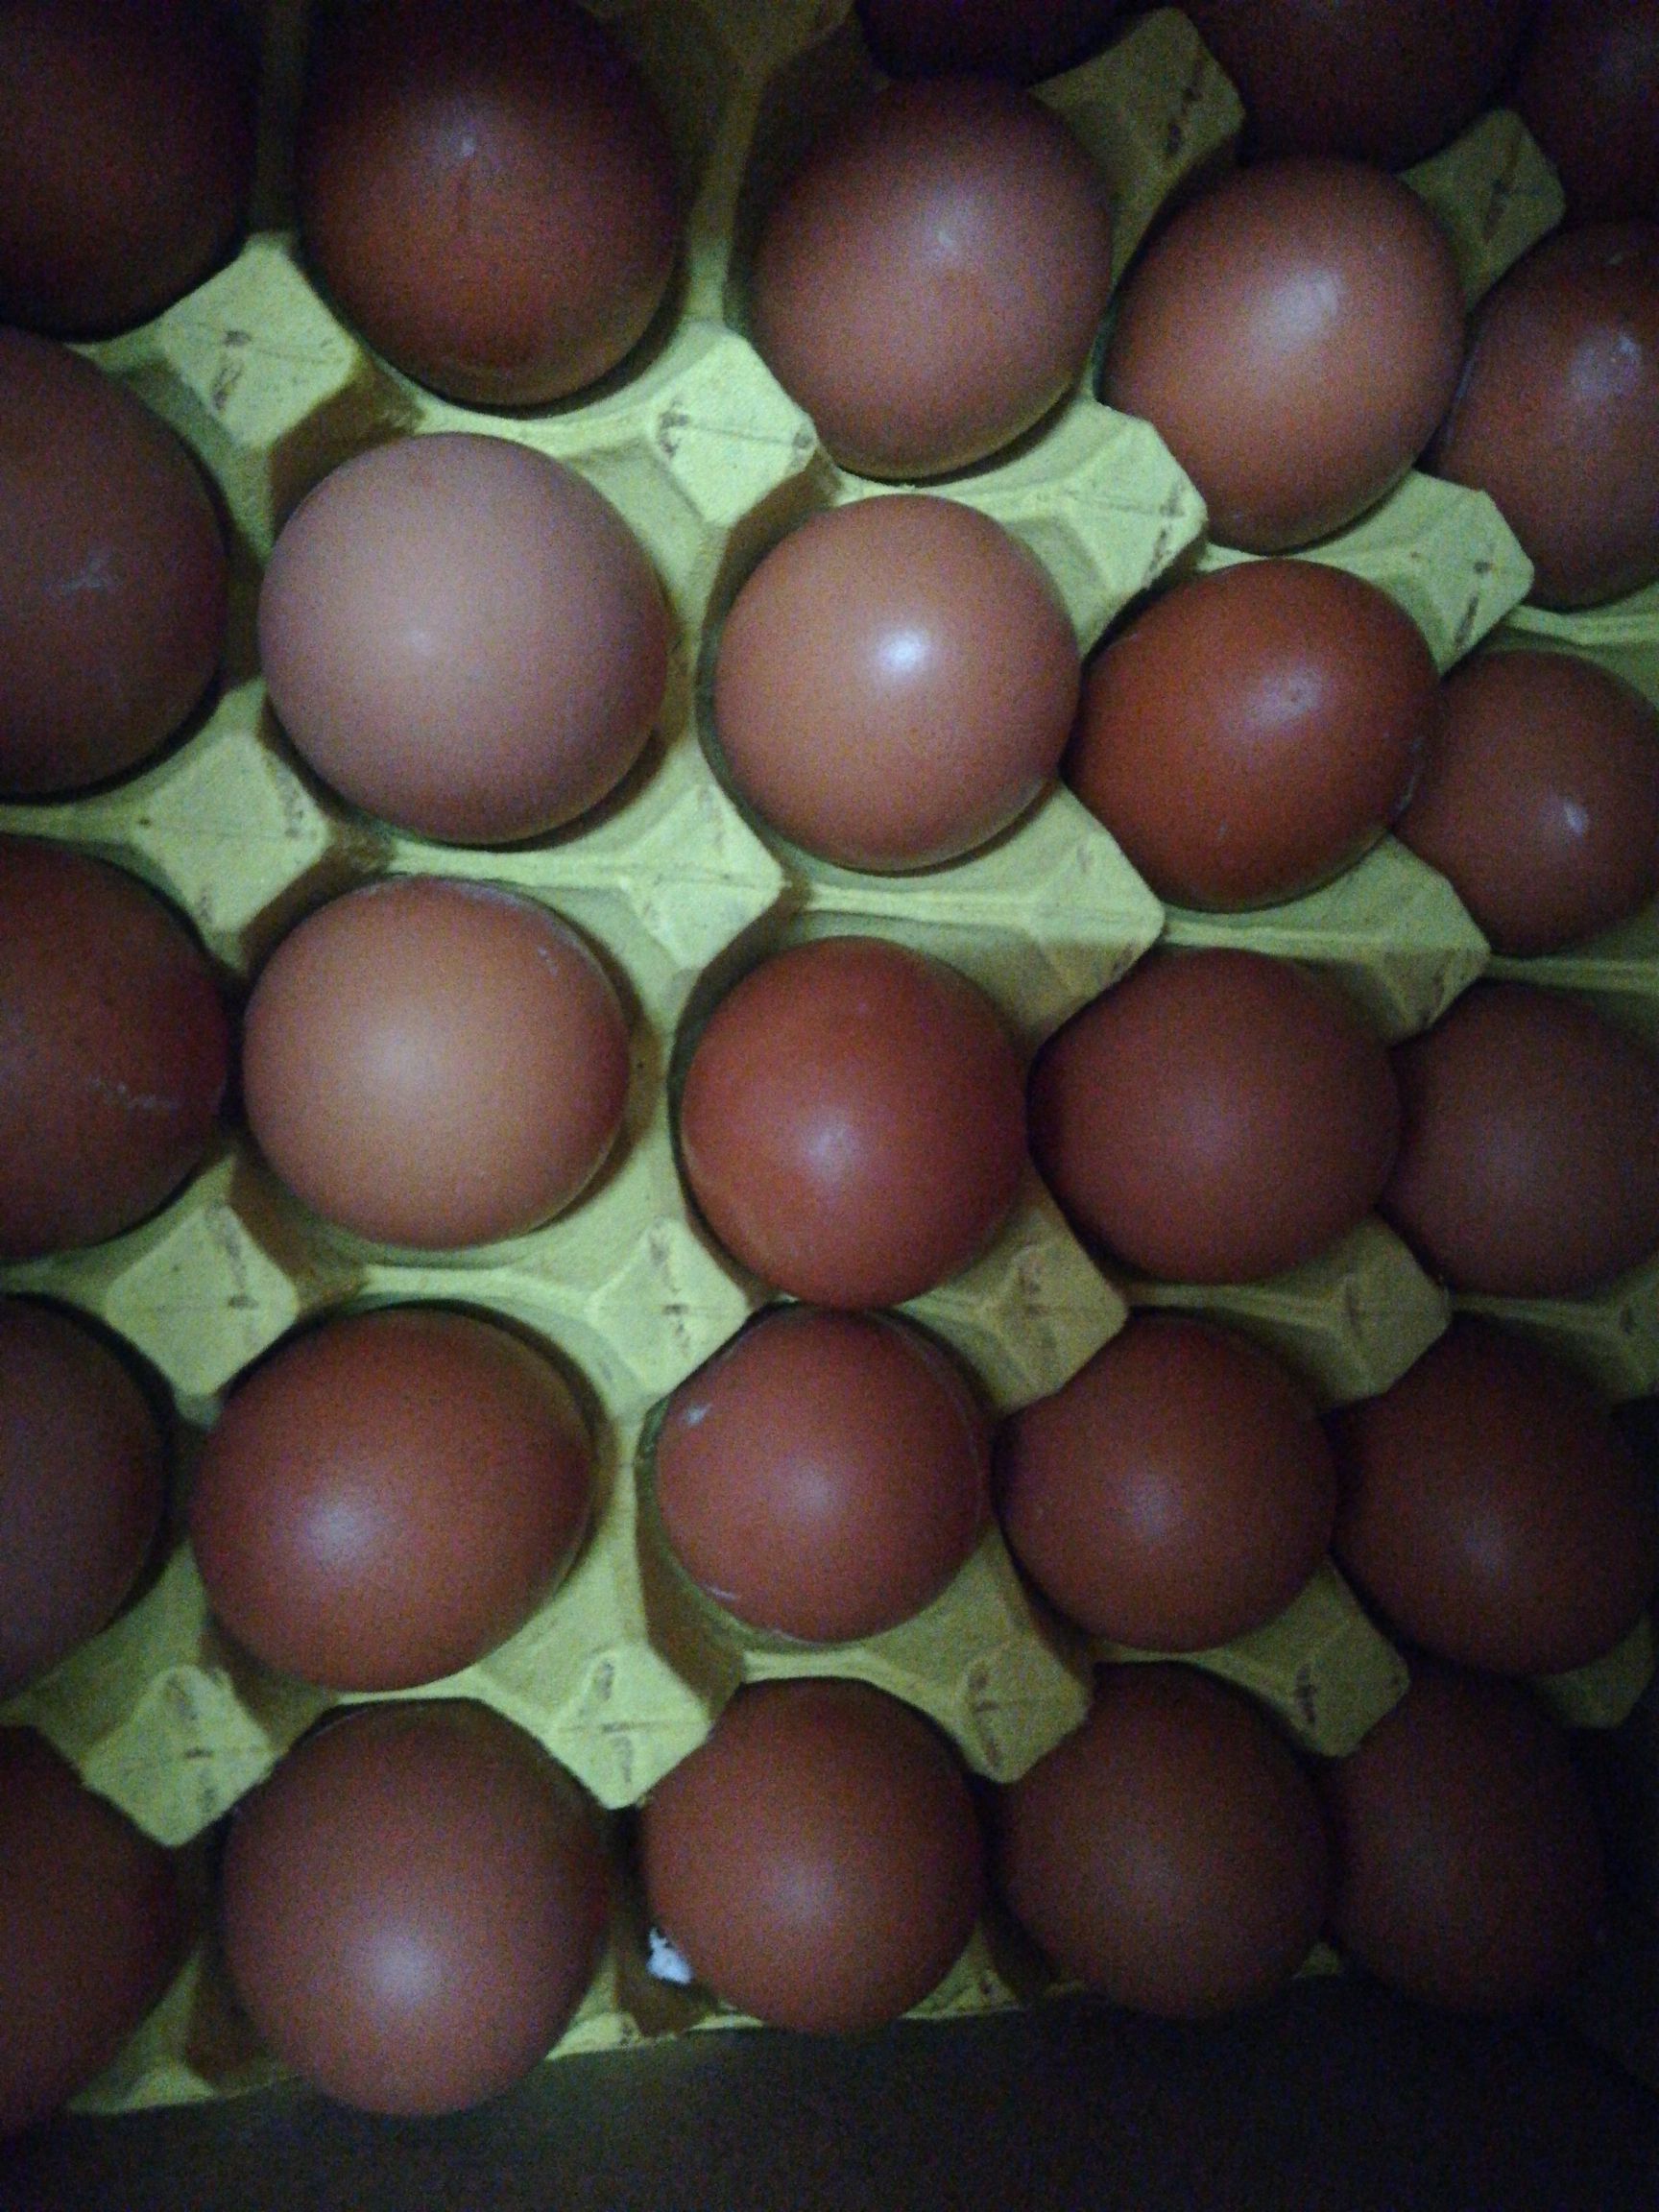 黑山褐壳鸡蛋图片